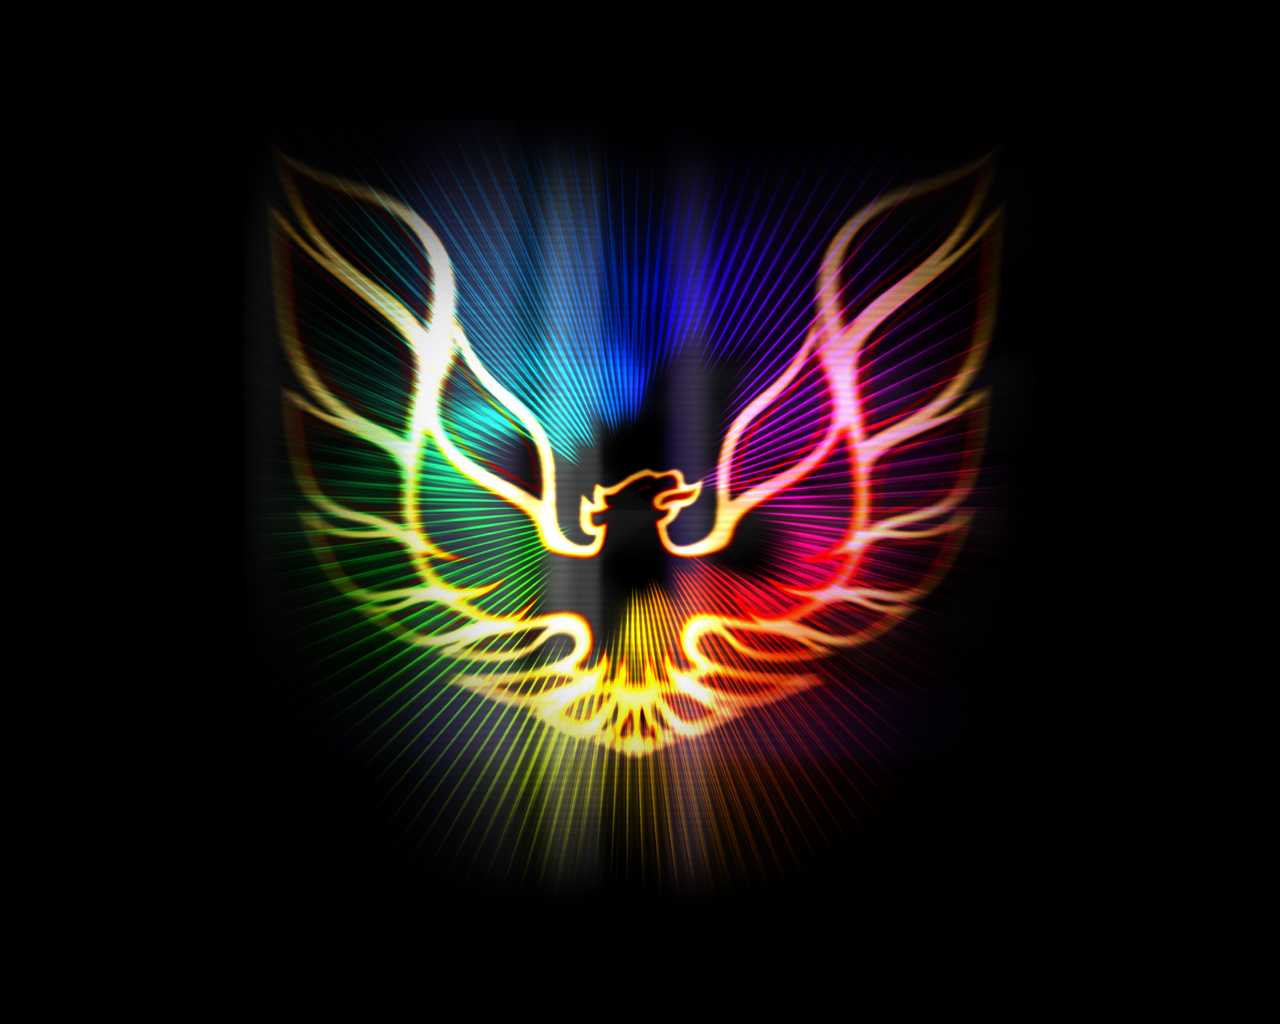 Phoenix Of Colors By Garenaboy Dsen 1280x1024 pixel Popular HD